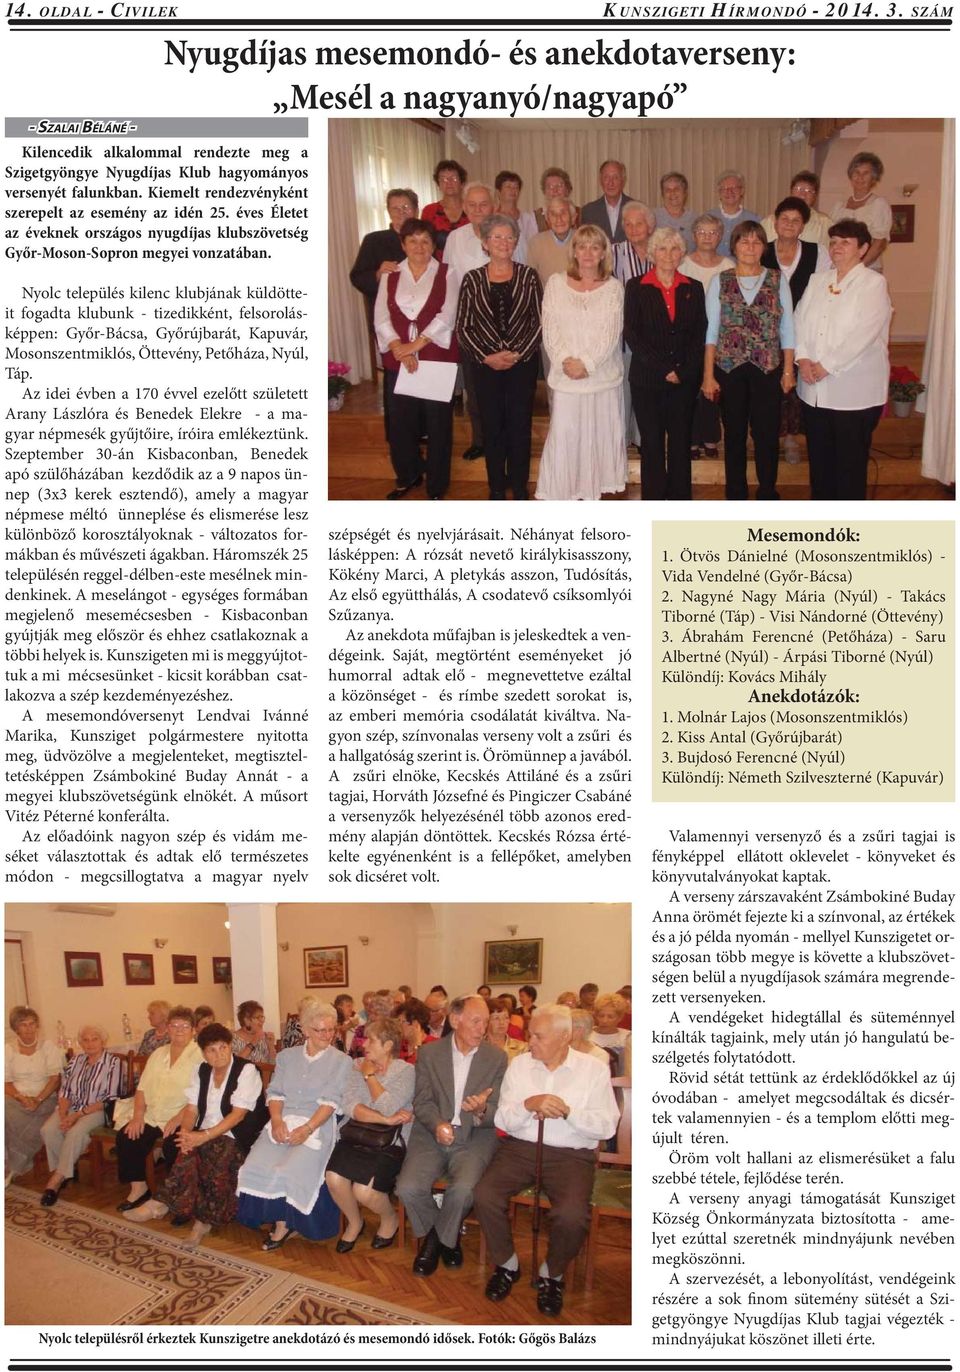 Kiemelt rendezvényként szerepelt az esemény az idén 25. éves Életet az éveknek országos nyugdíjas klubszövetség Győr-Moson-Sopron megyei vonzatában.